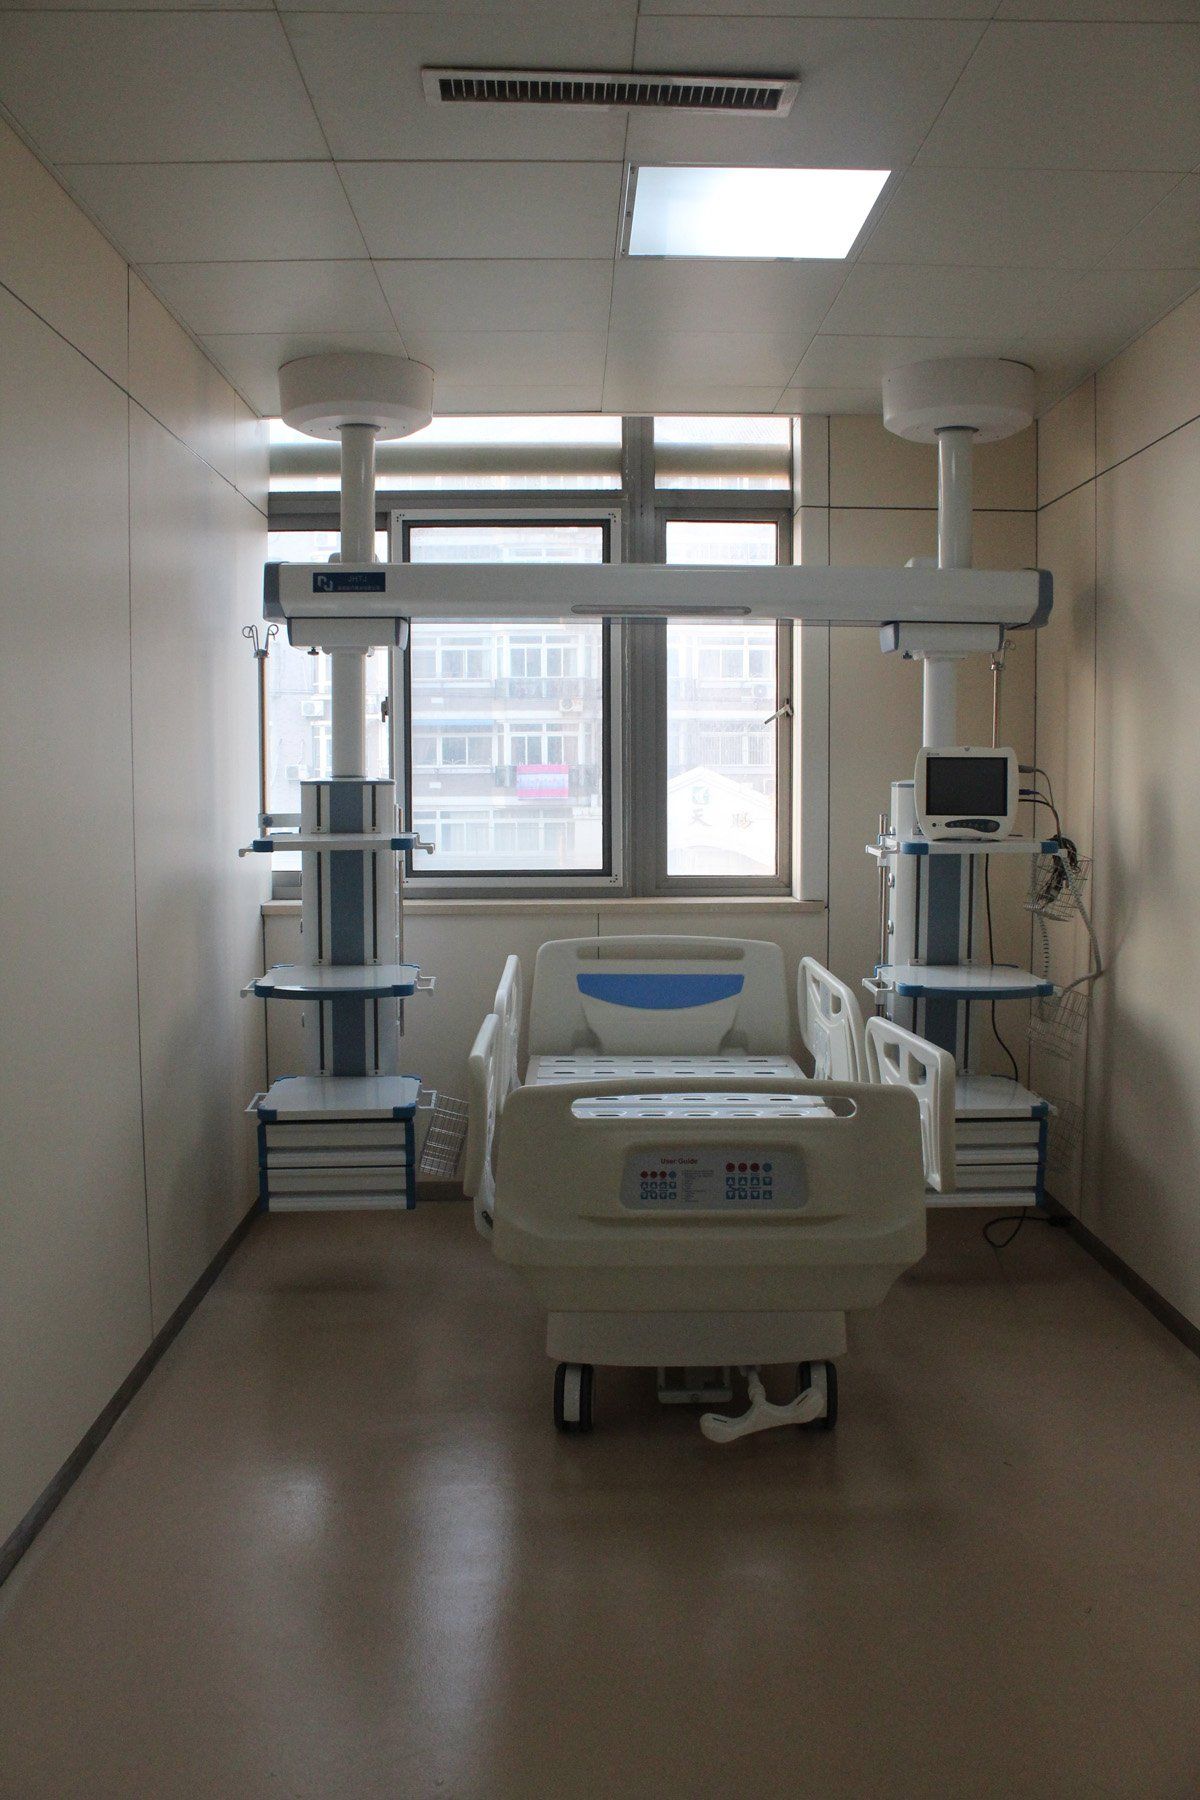 Simed Germany Klinikbett Krankenbett Intensivstation Bett Klinikeinrichtung